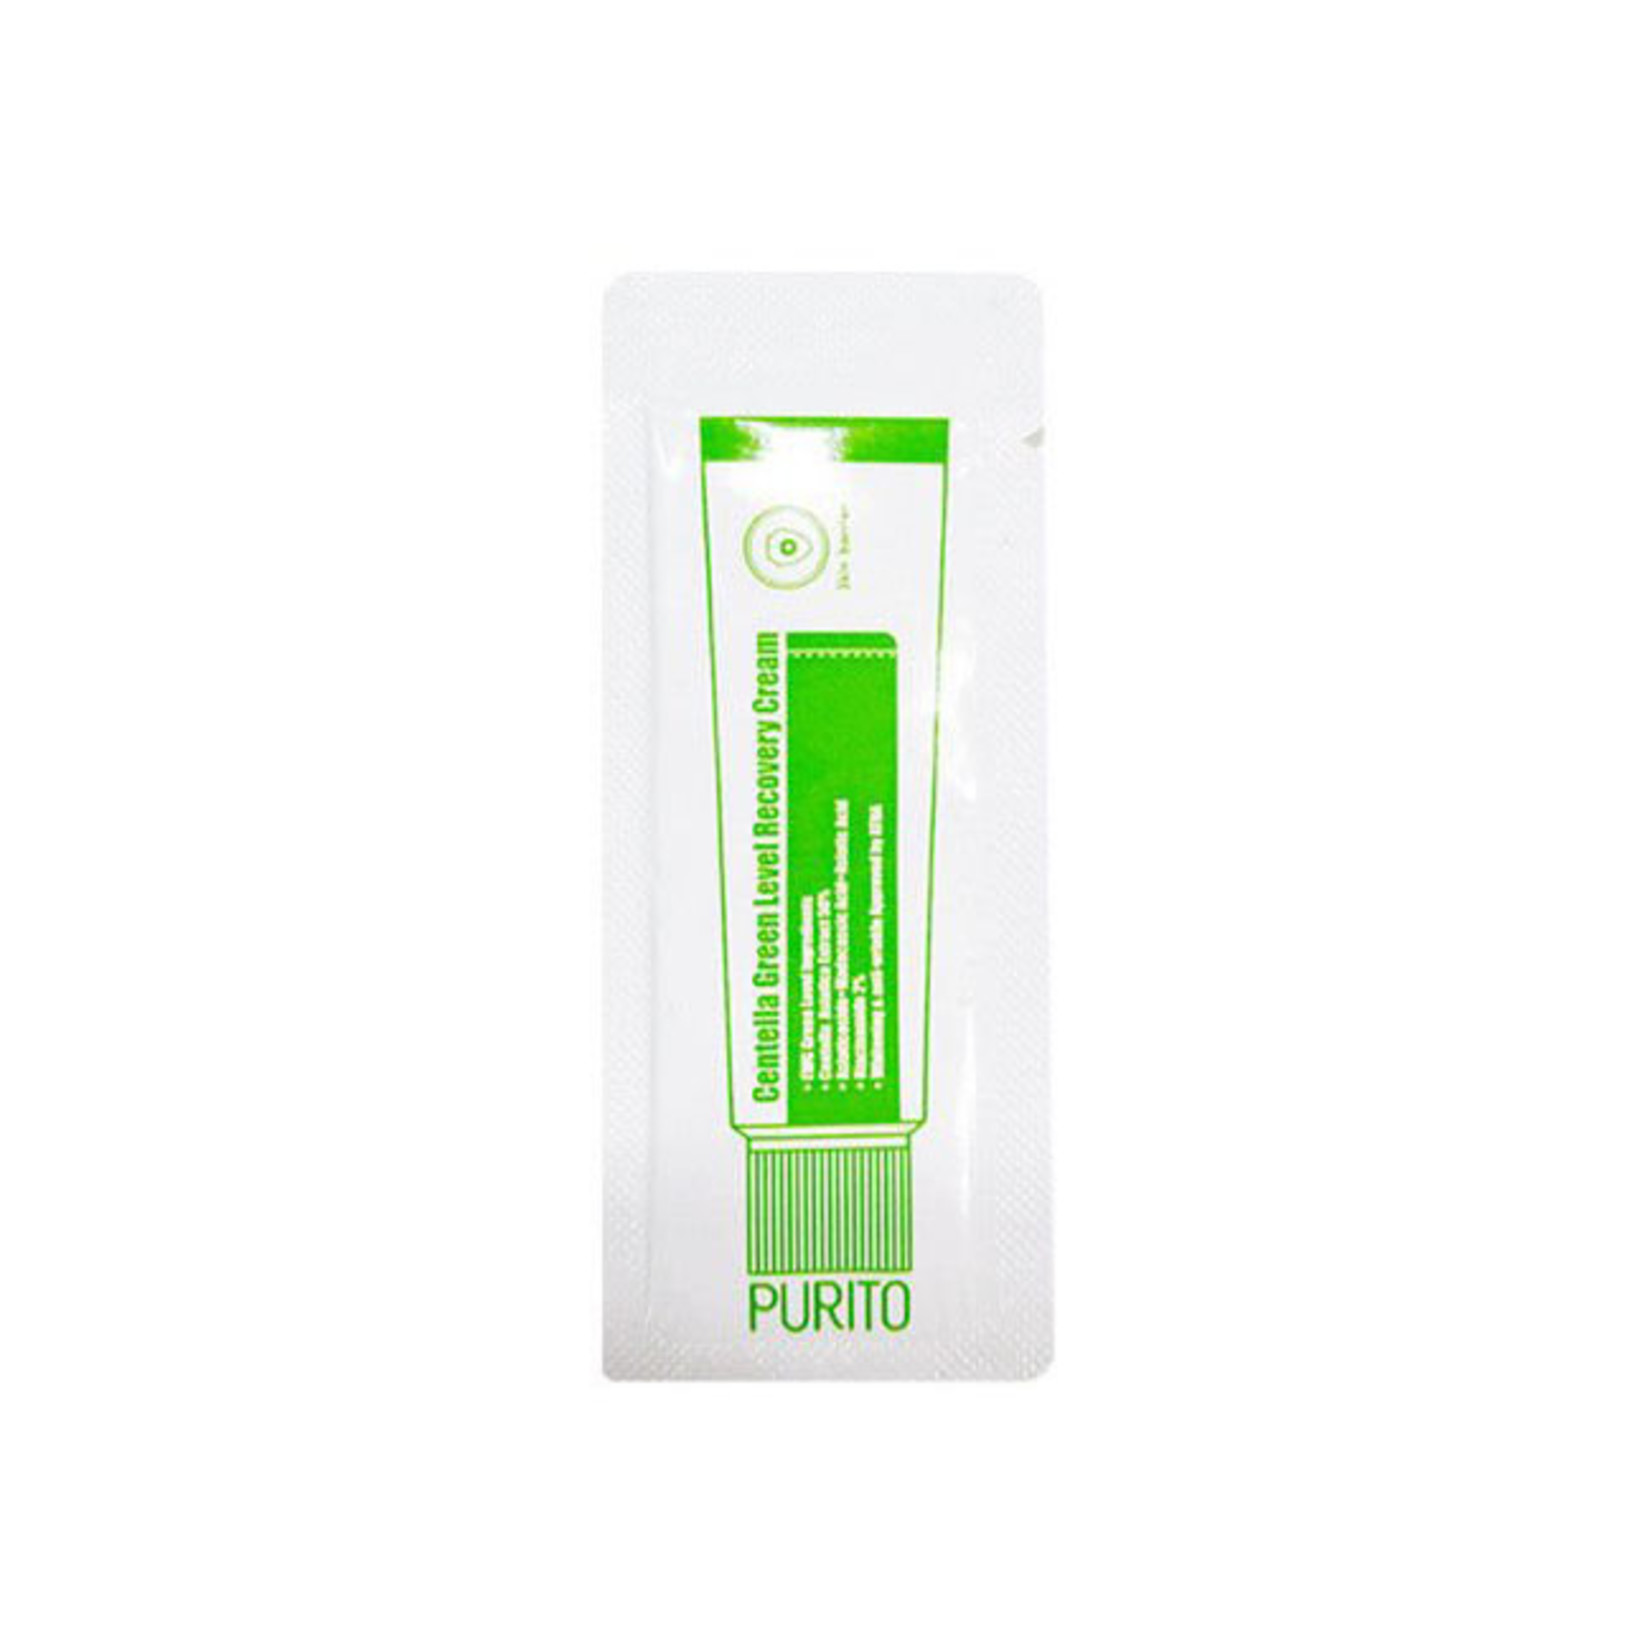 Purito Centella Green Level Recovery Cream Sample 50pcs